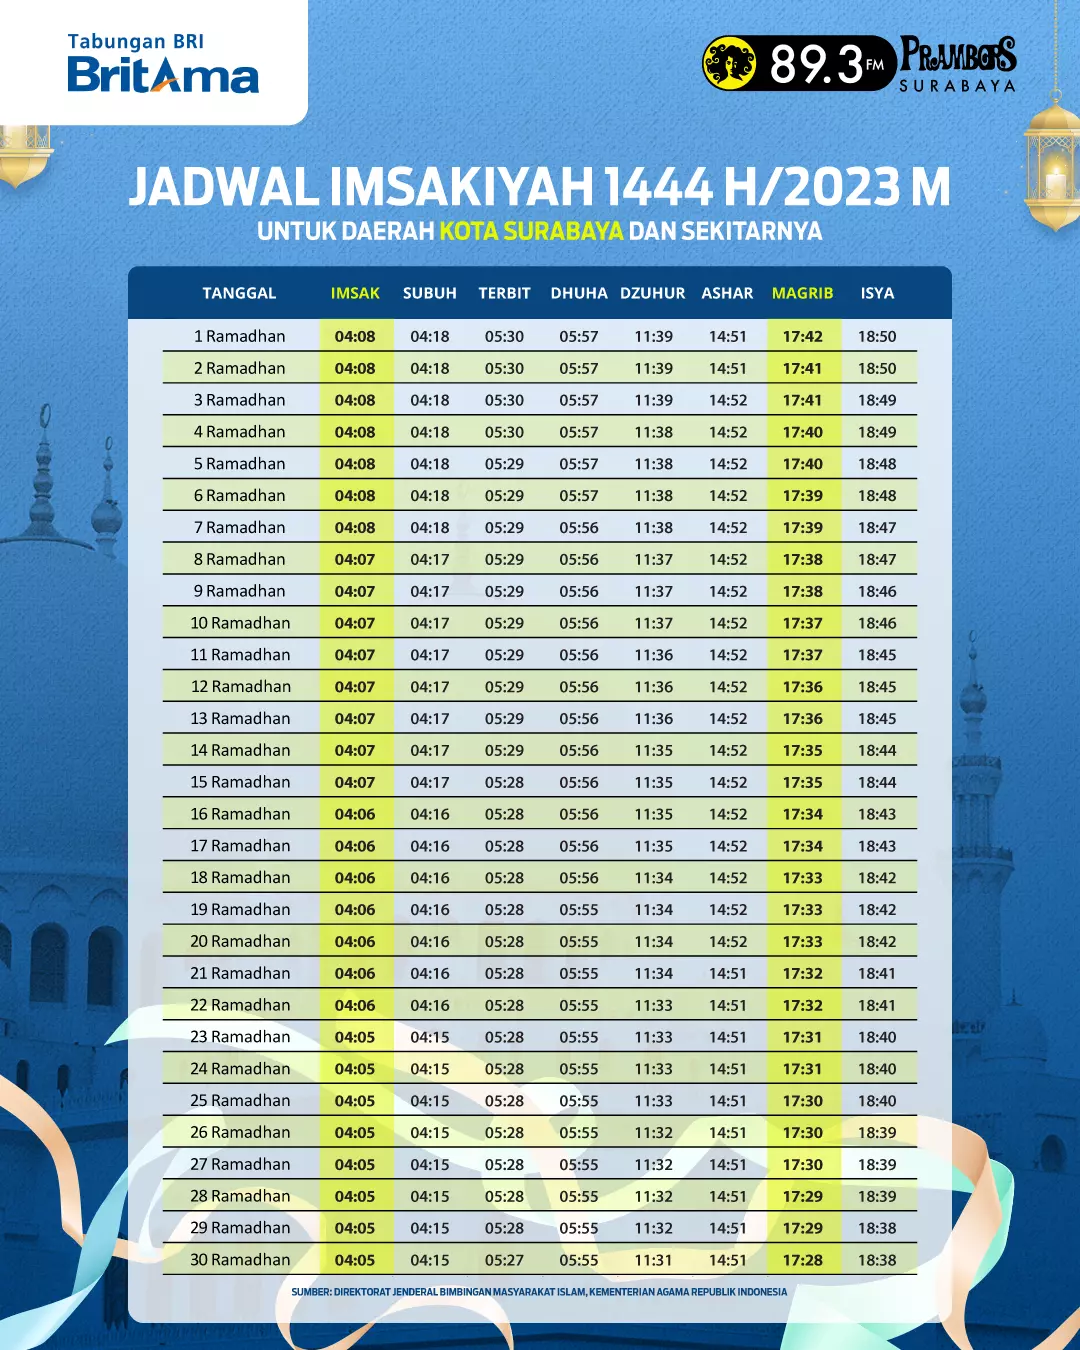 Jadwal Imsakiyah Surabaya - Bank BRI